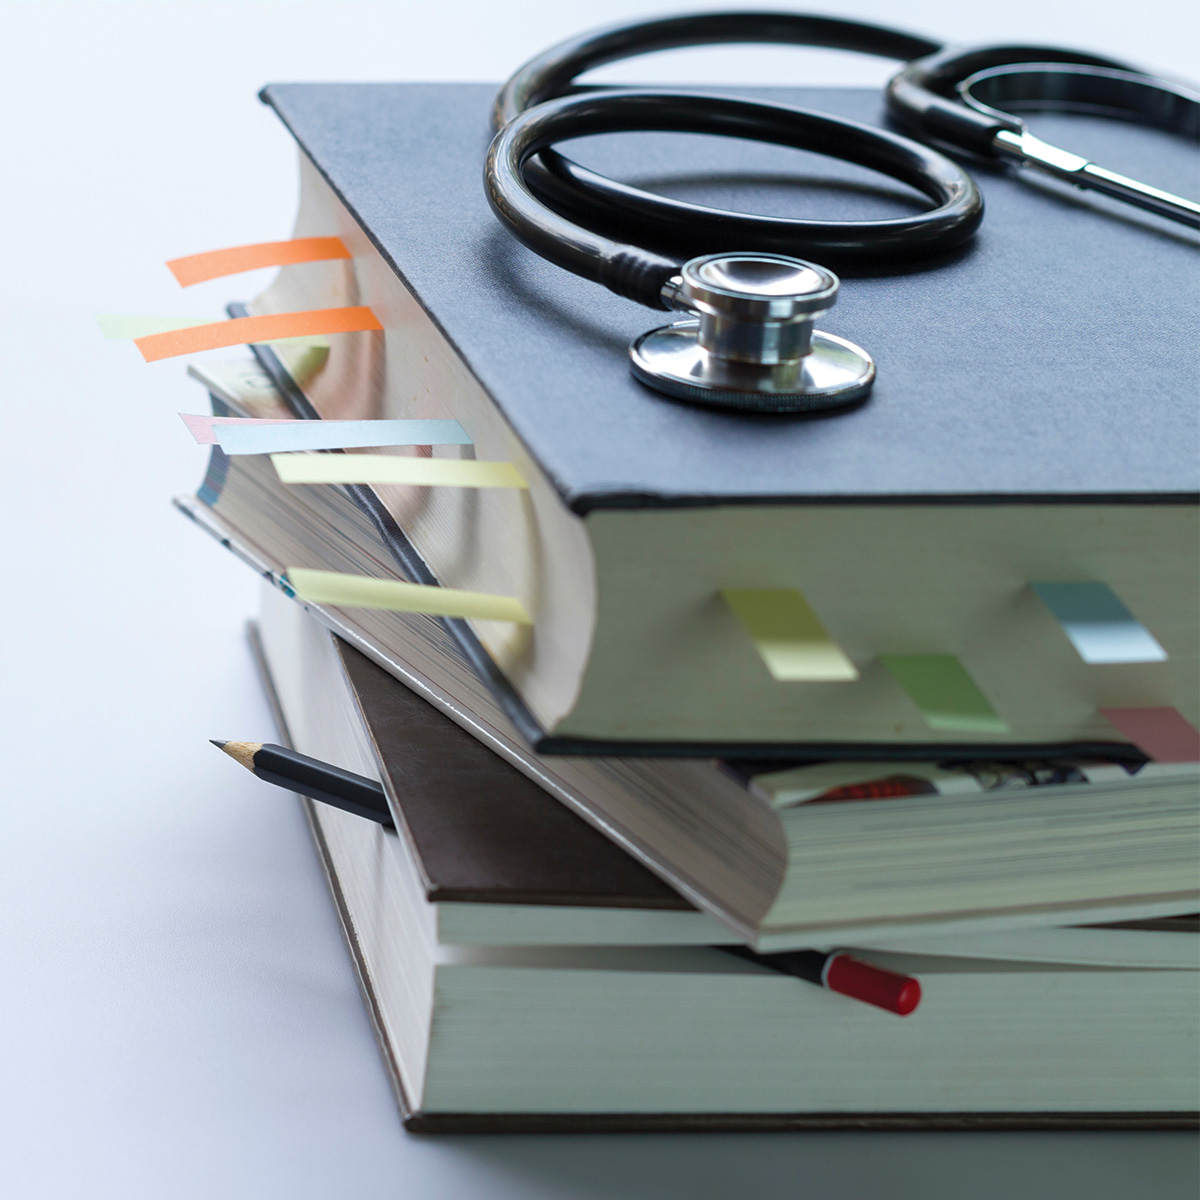 Libros de medicina con varias etiquetas de colores y un estetoscopio apoyado arriba.